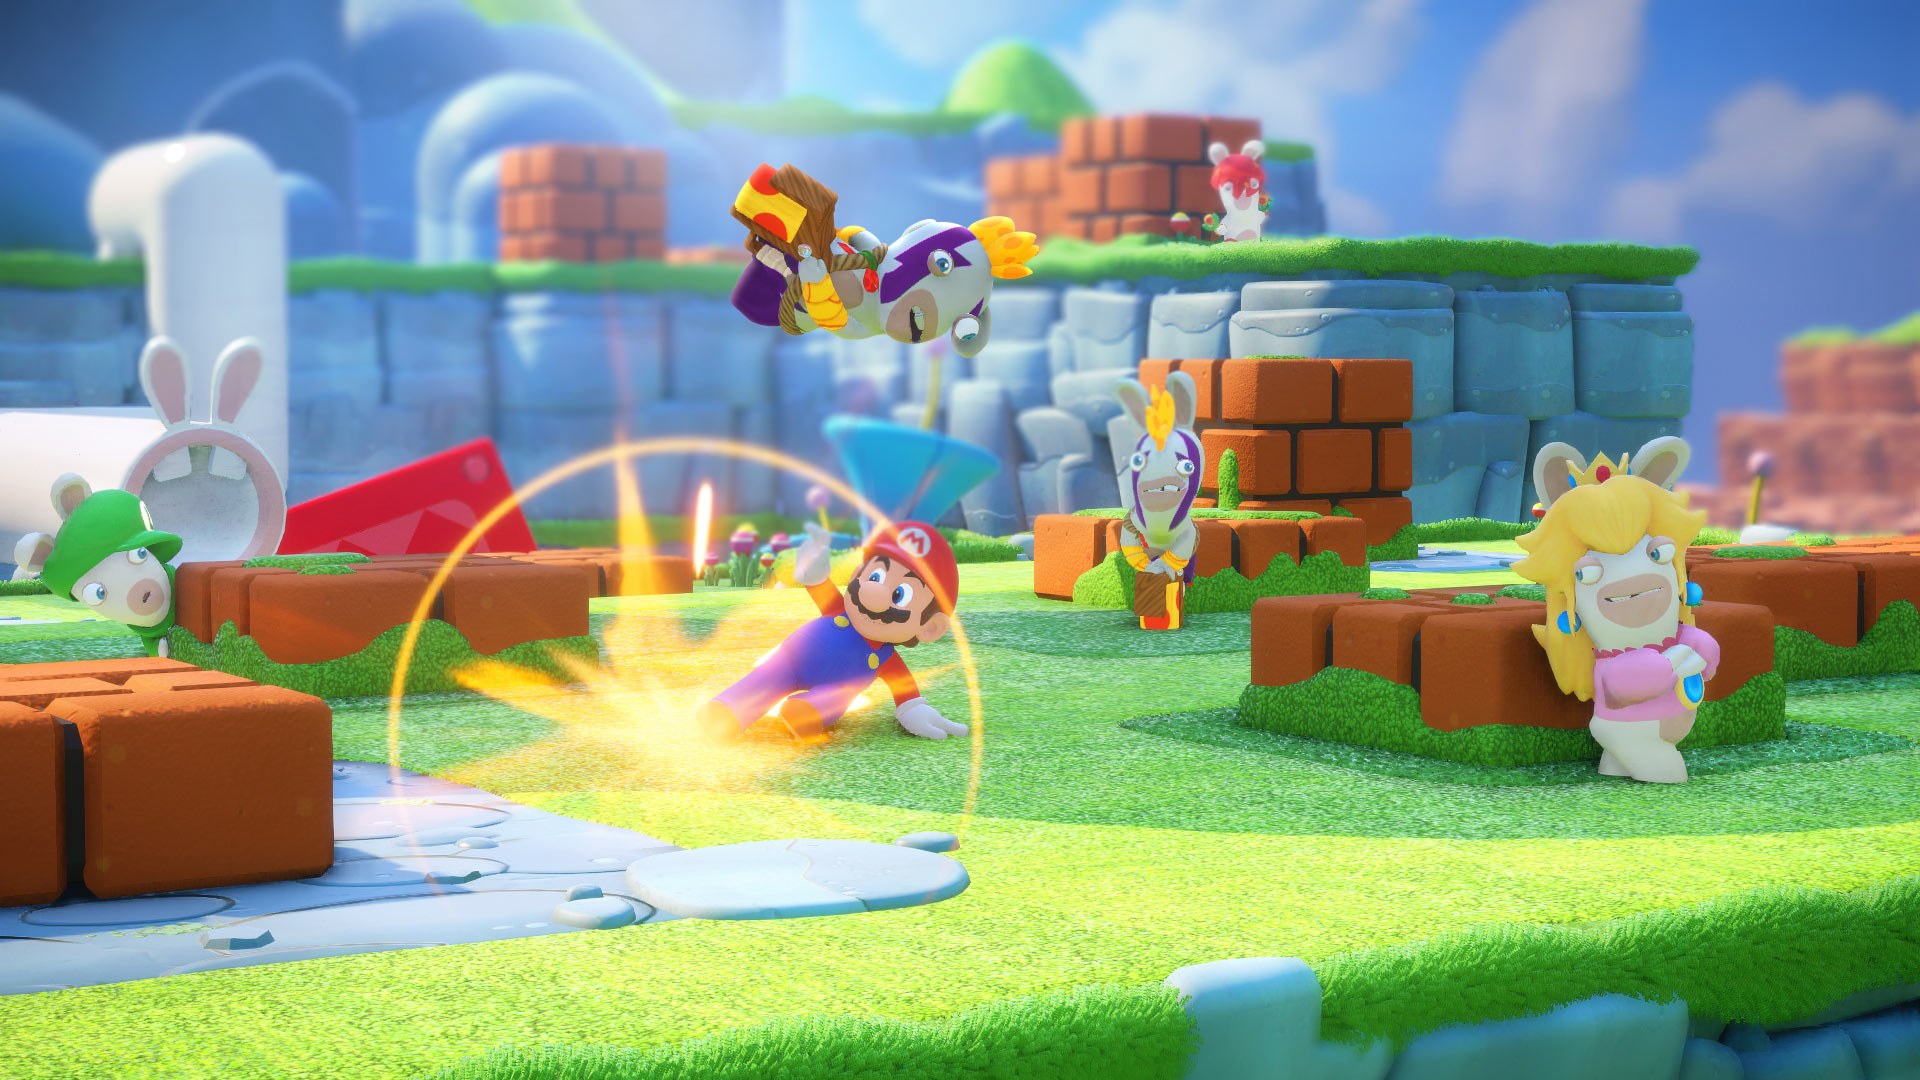 Mario + Rabbids Kingdom Battle E3 2017 Impressions